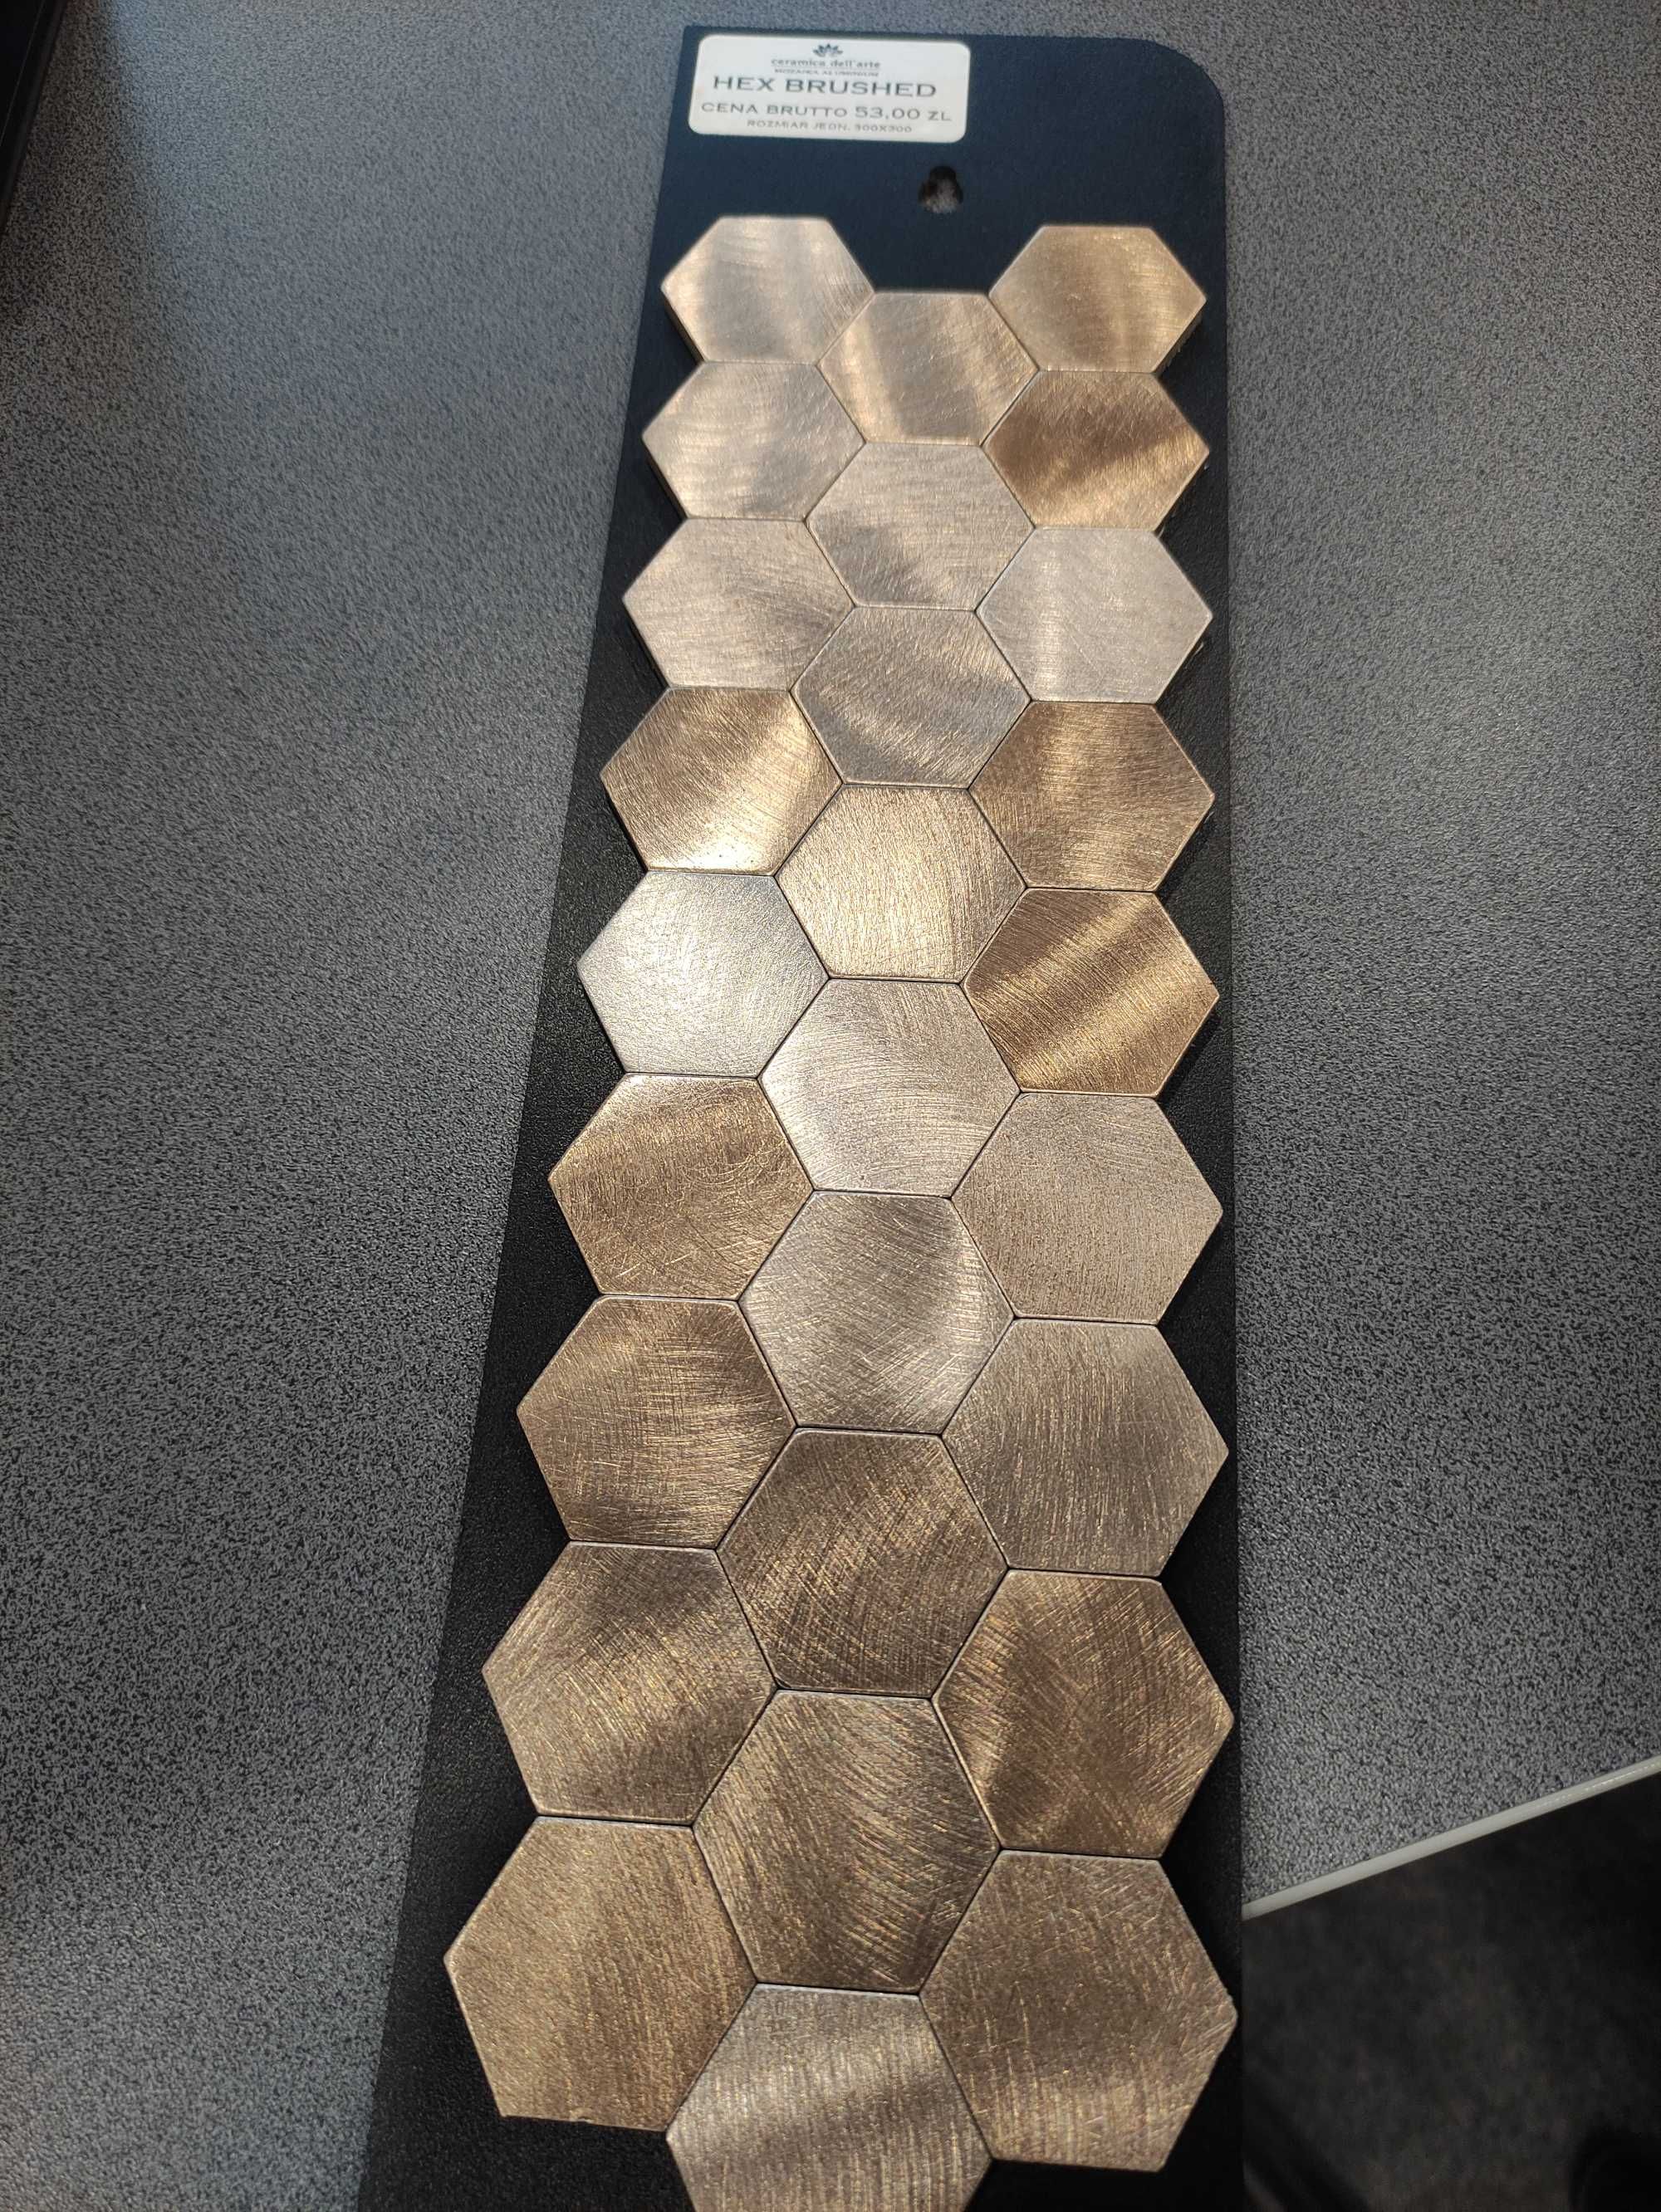 Mozaika miedziana heksagonalna Dell Arte Hex Brushed 30x30